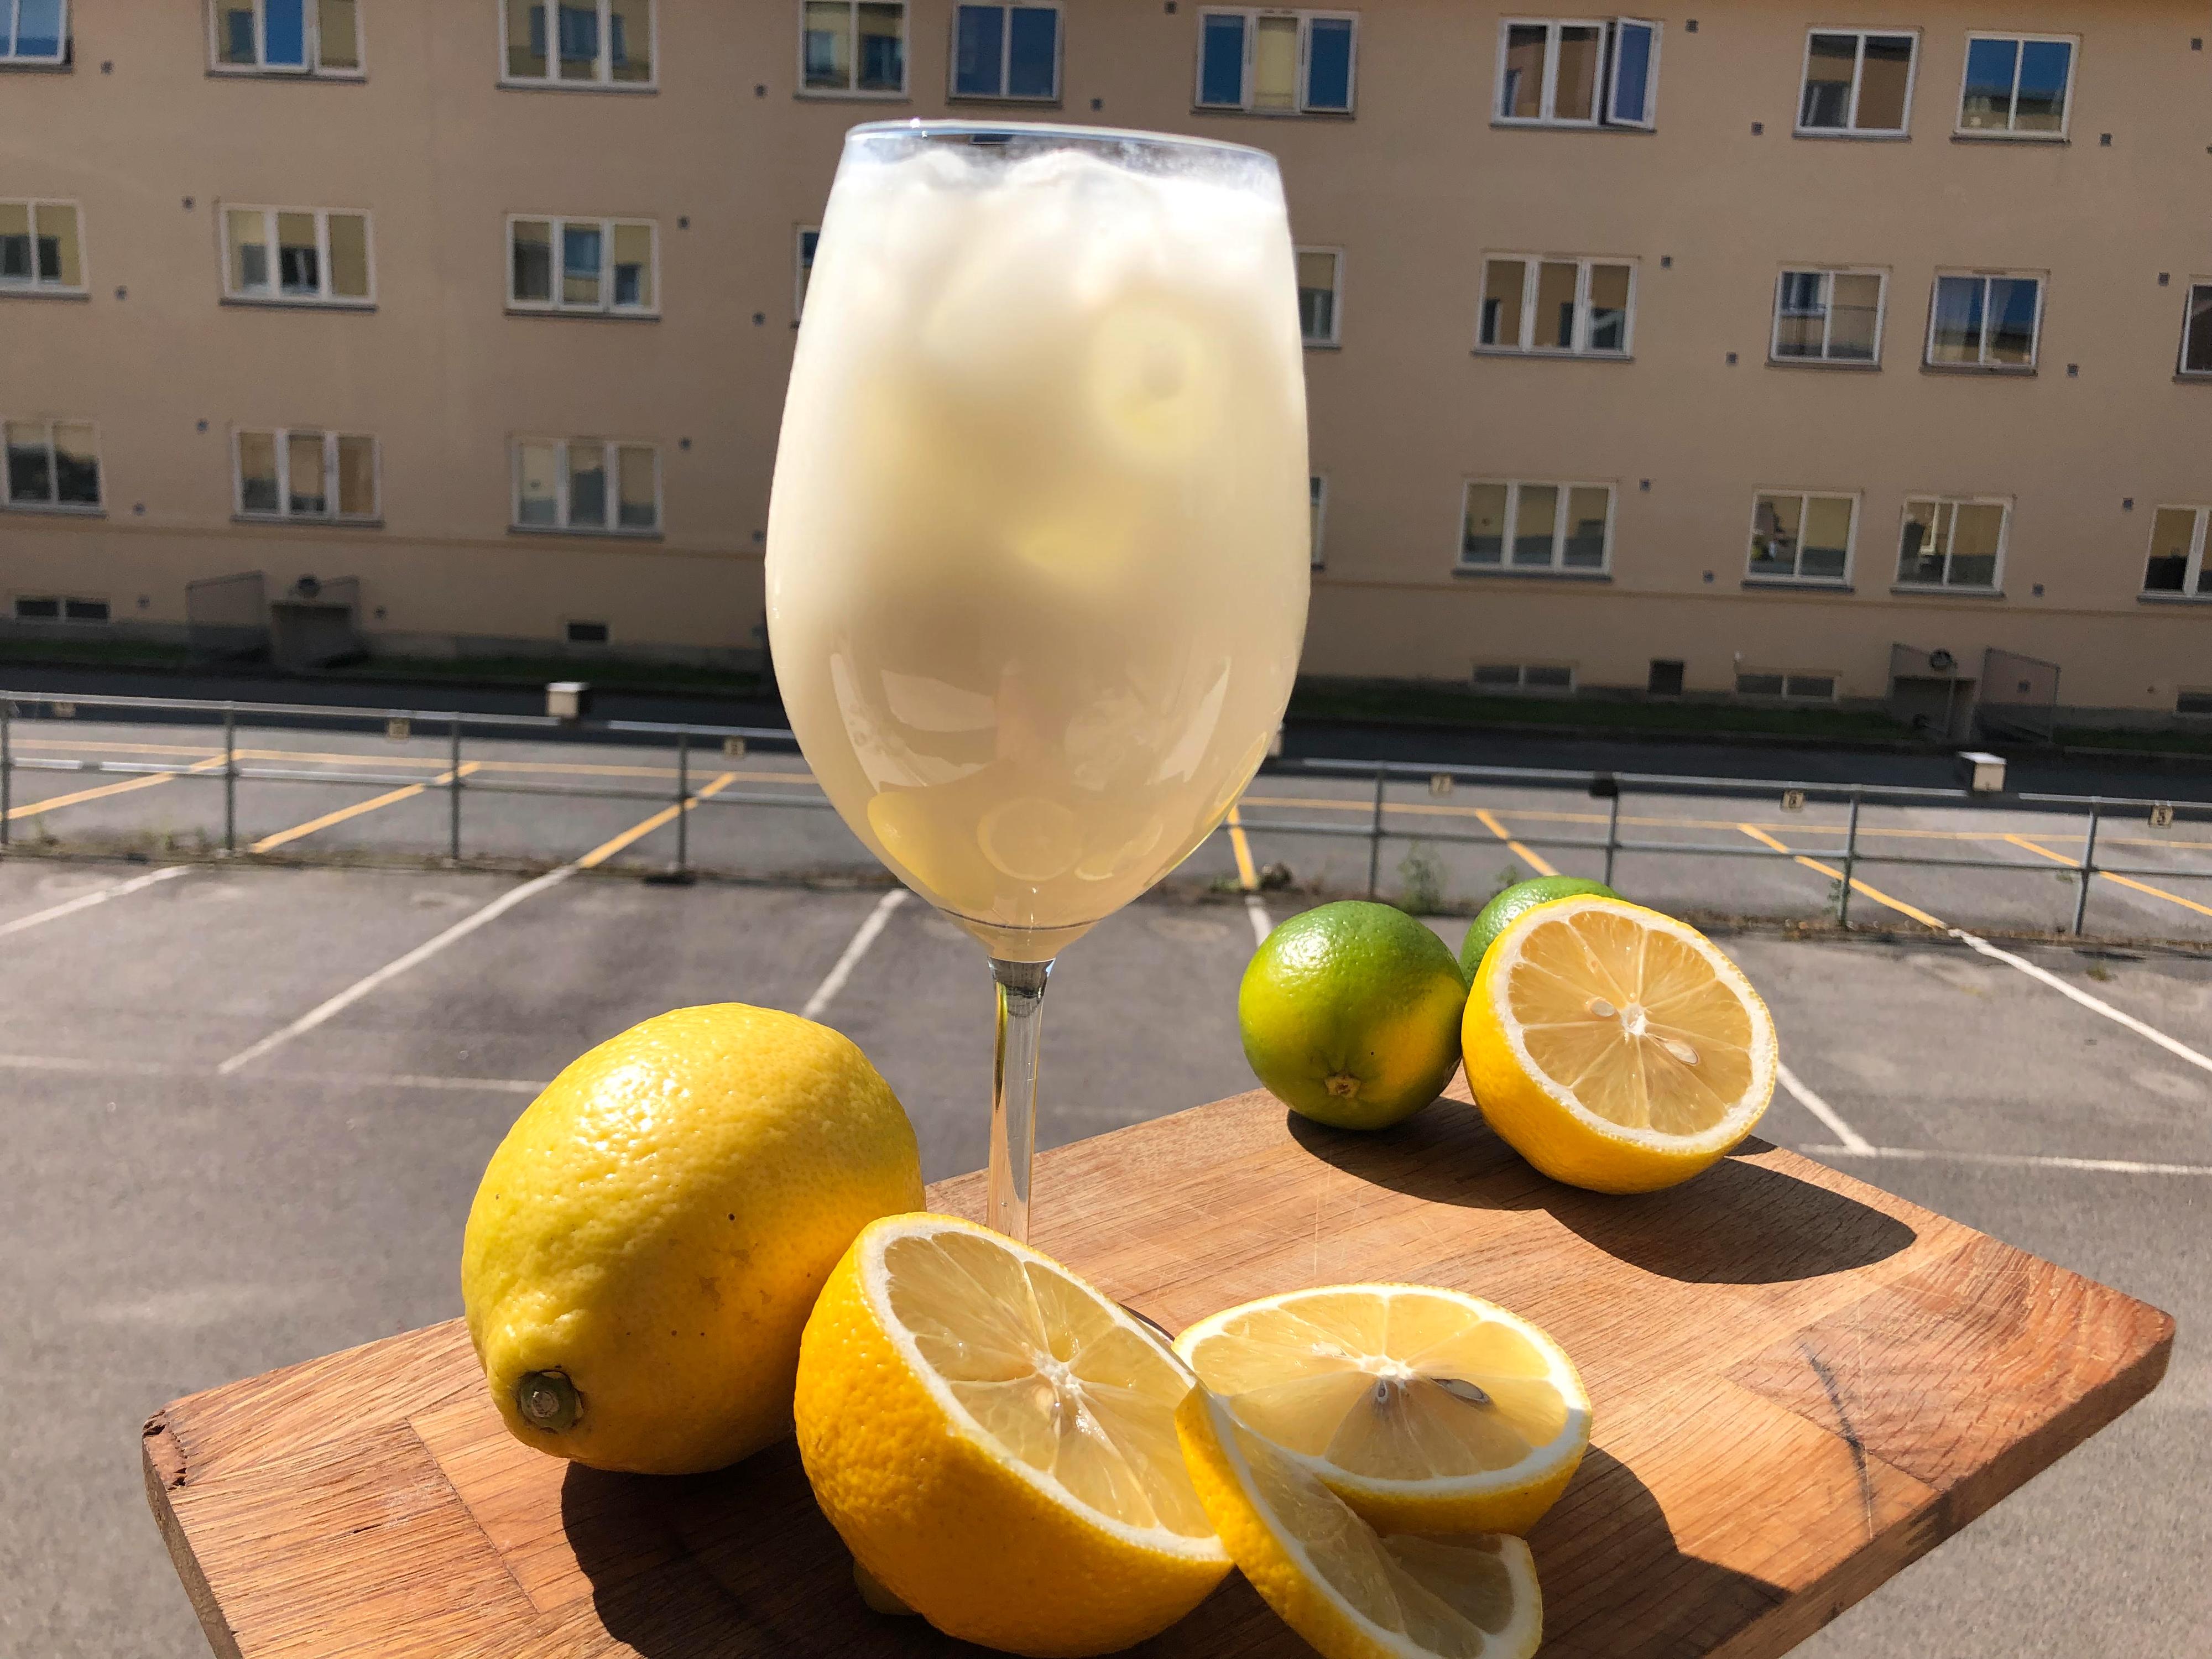 VIRALDRIKK: I år er det en sommerlig og syrlig drikk som går viralt, nemlig en ny variant av den tradisjonelle drikken limonade. 